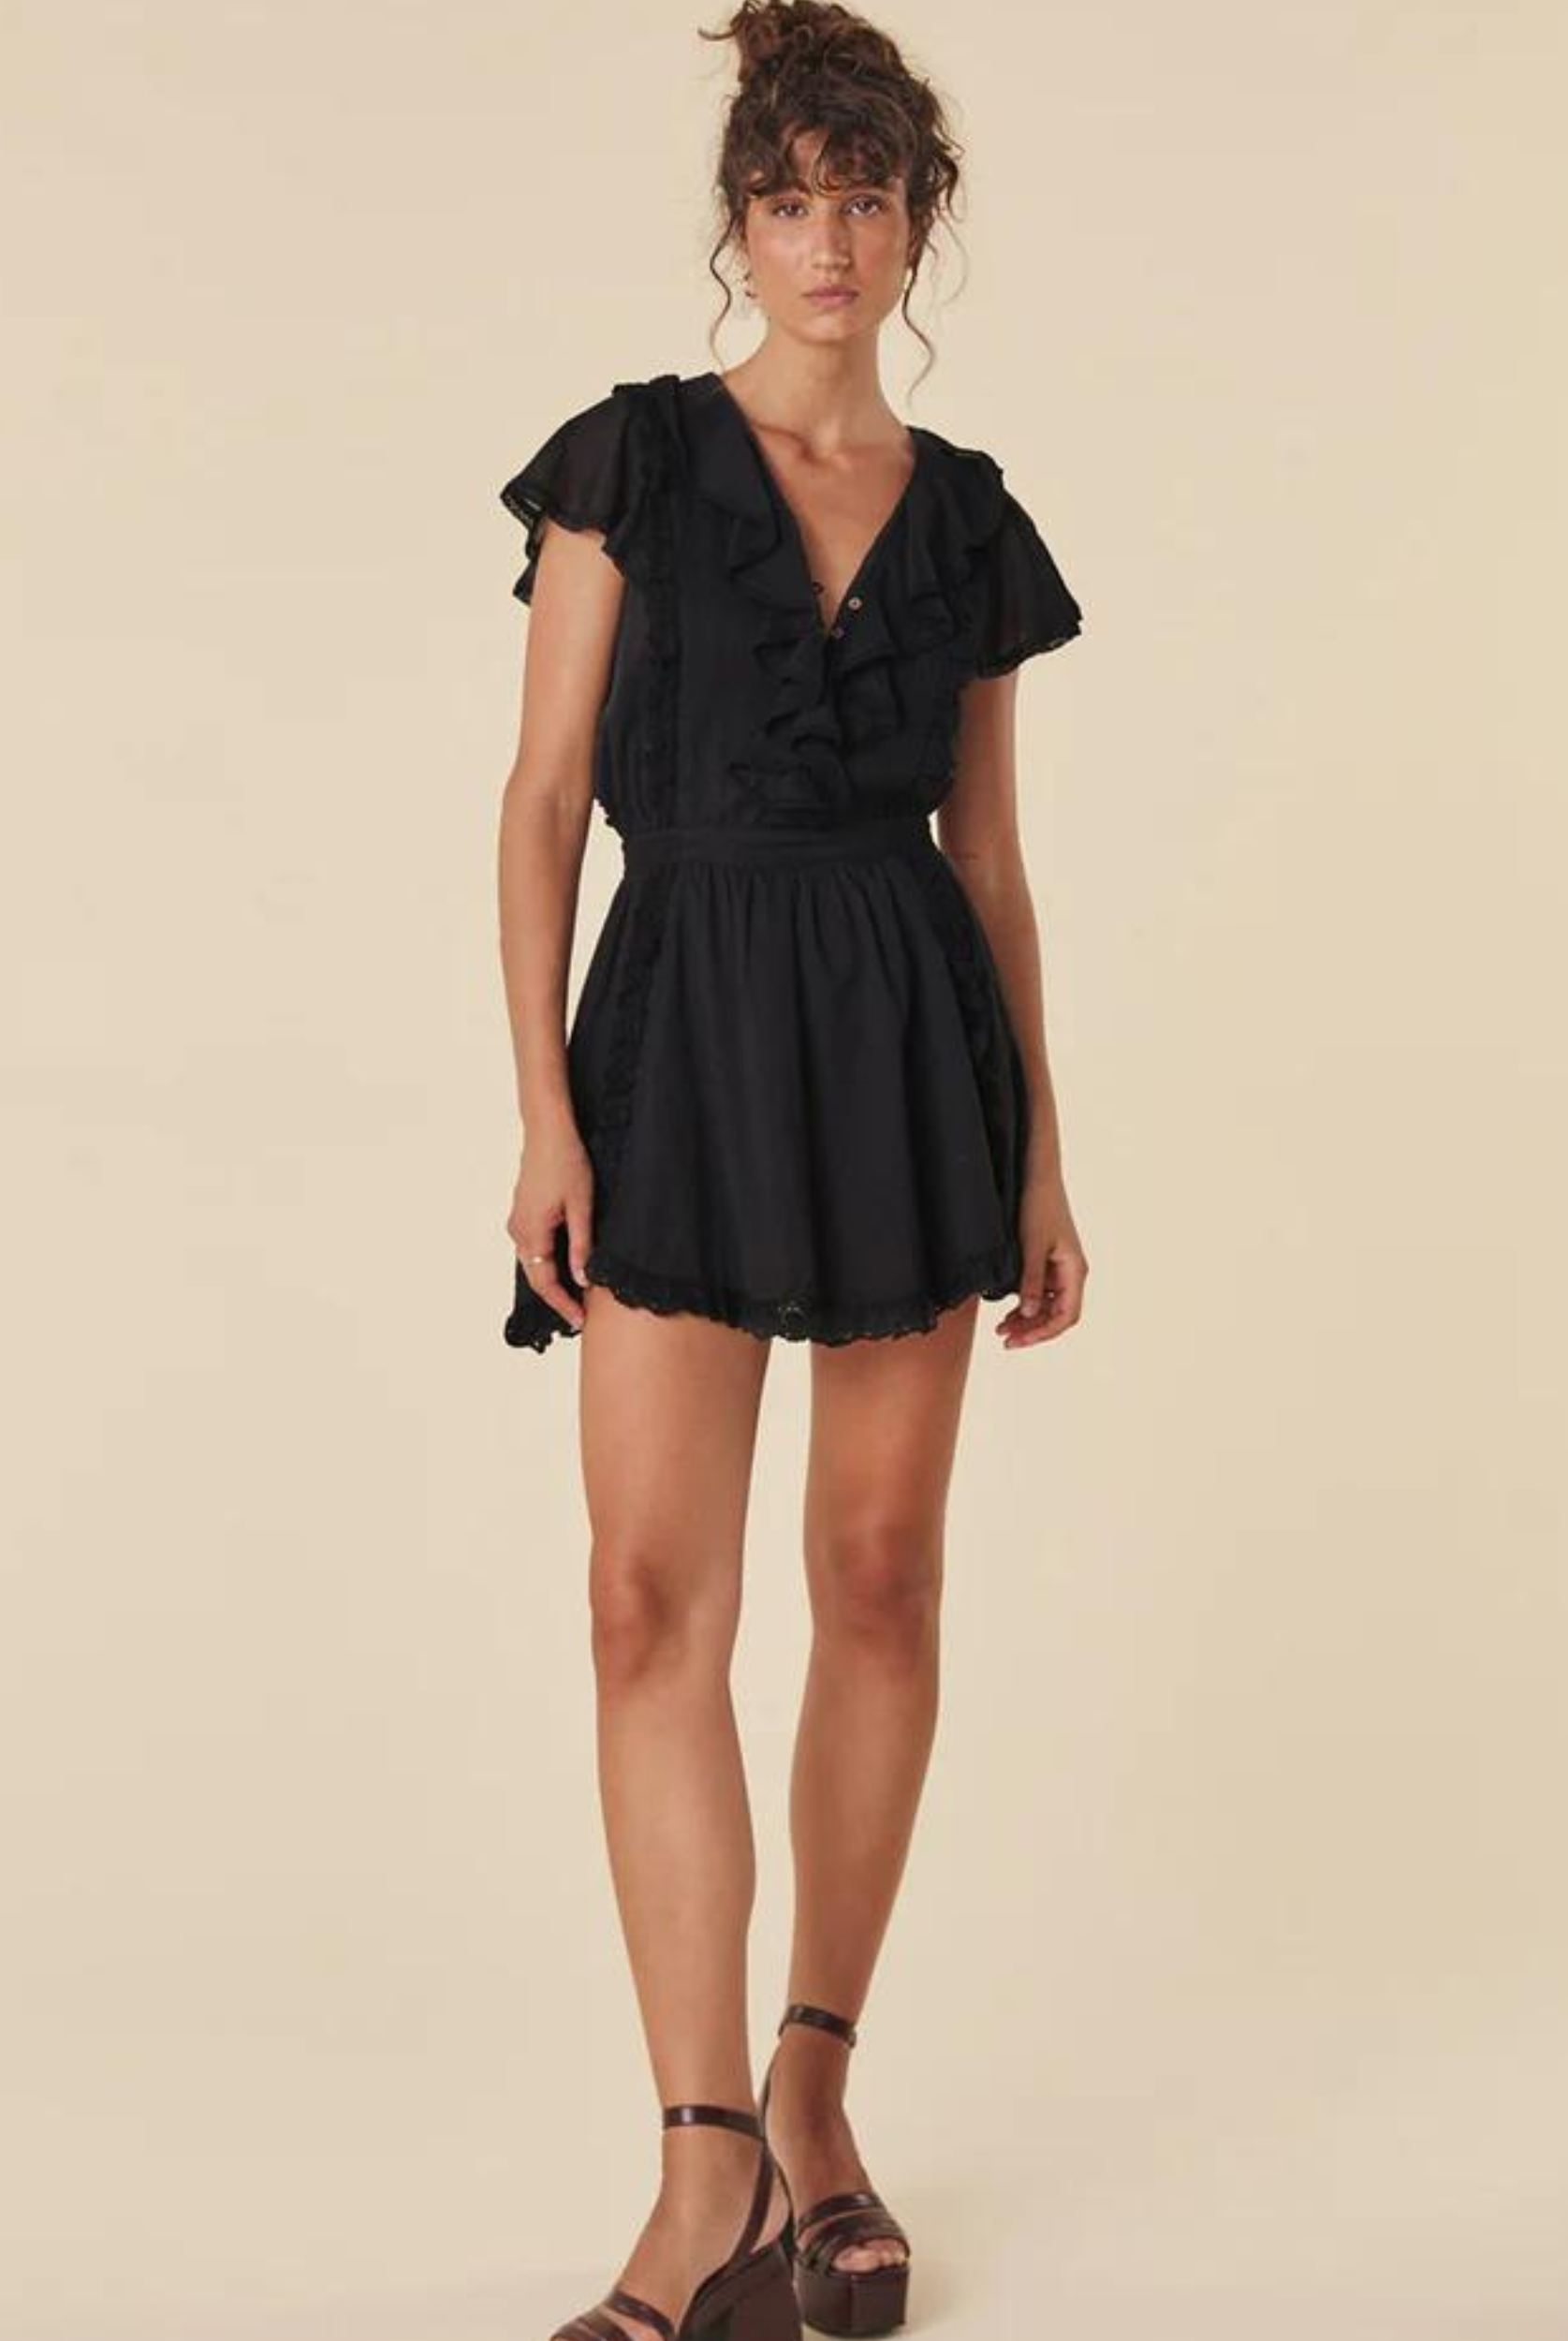 Model wearing the black dove lace mini dress